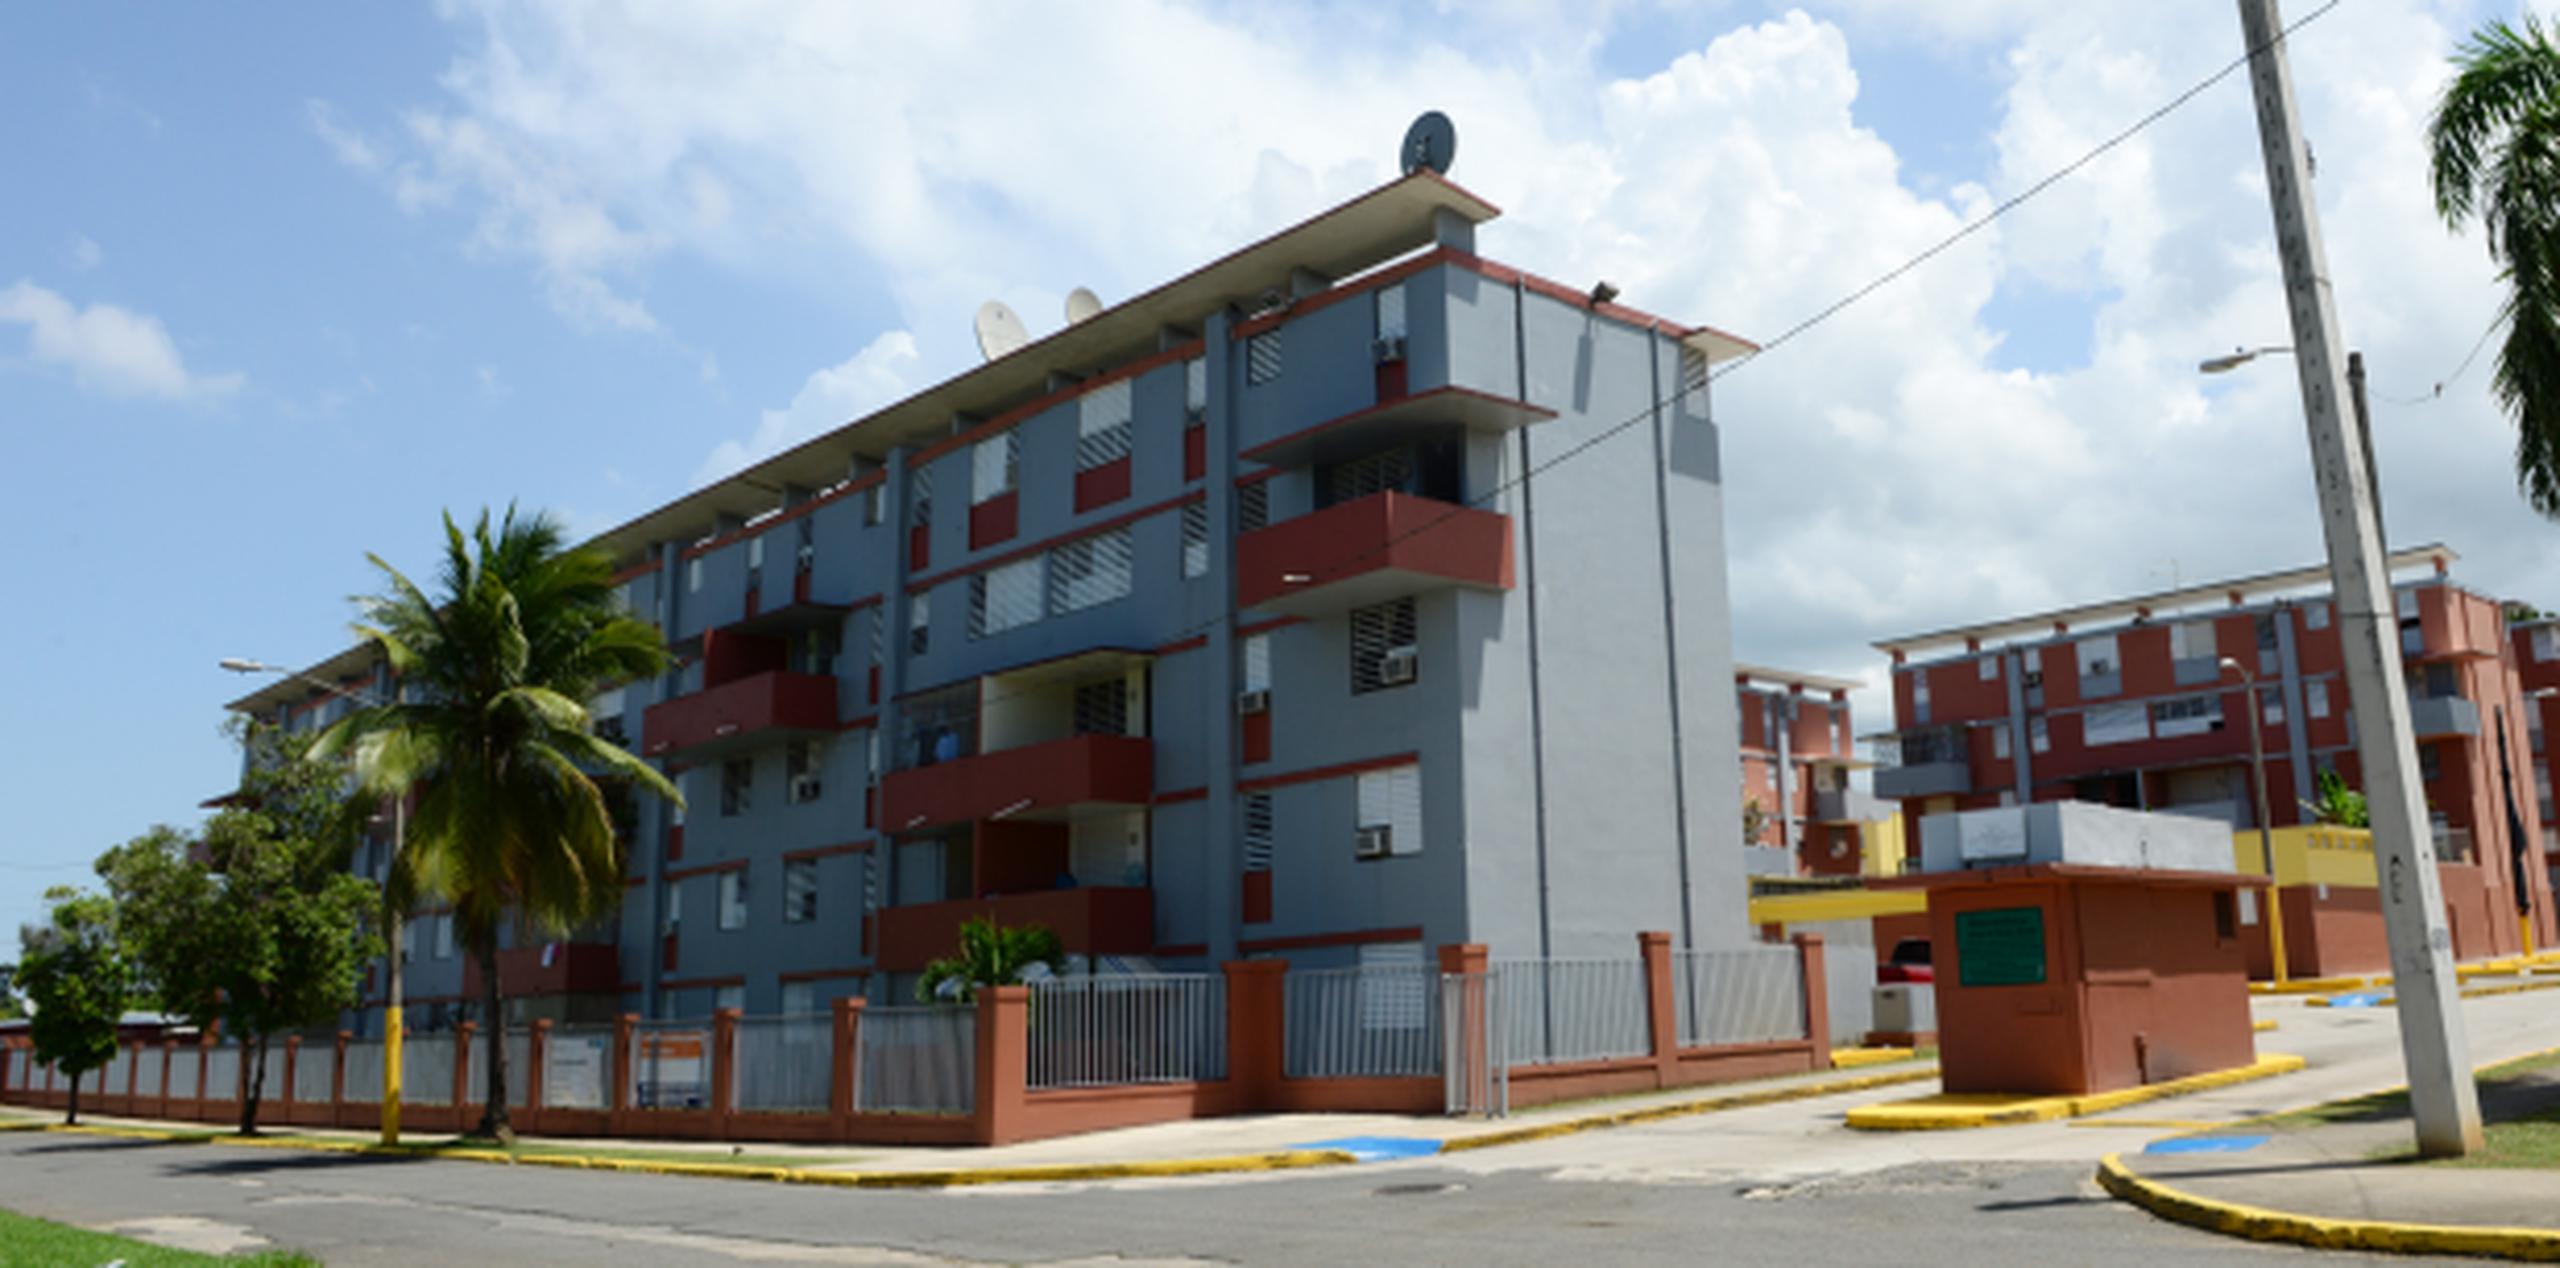 Las inmediaciones del residencial Monte Hatillo han sido blanco de confrontaciones a tiros al menos desde 1993. (ismael.fernandez@gfrmedia.com)